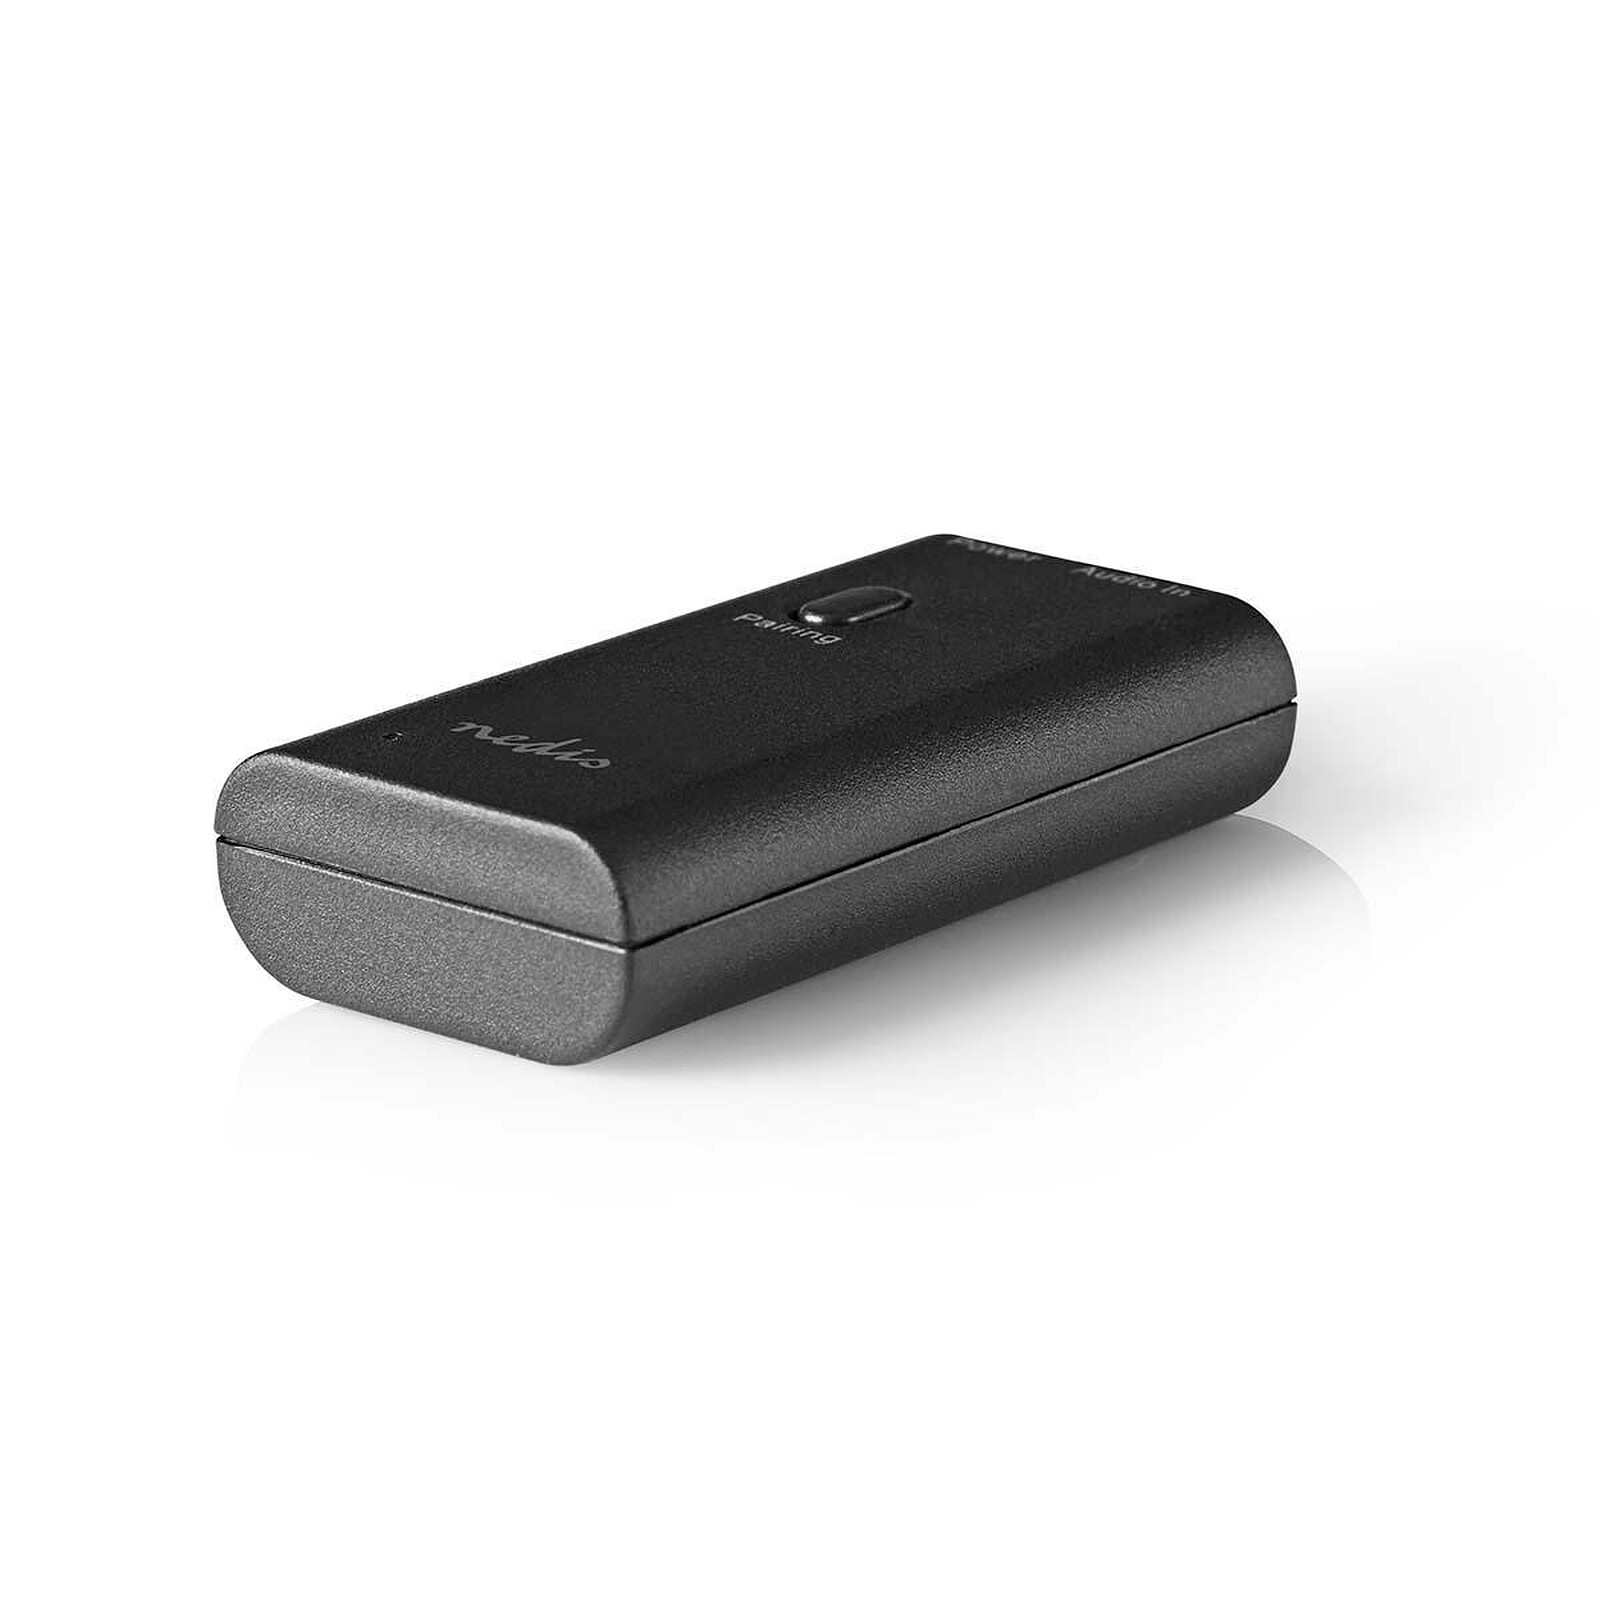 Akashi Transmetteur Audio Sans Fil Jack Bluetooth - Réseau & Streaming audio  - Garantie 3 ans LDLC